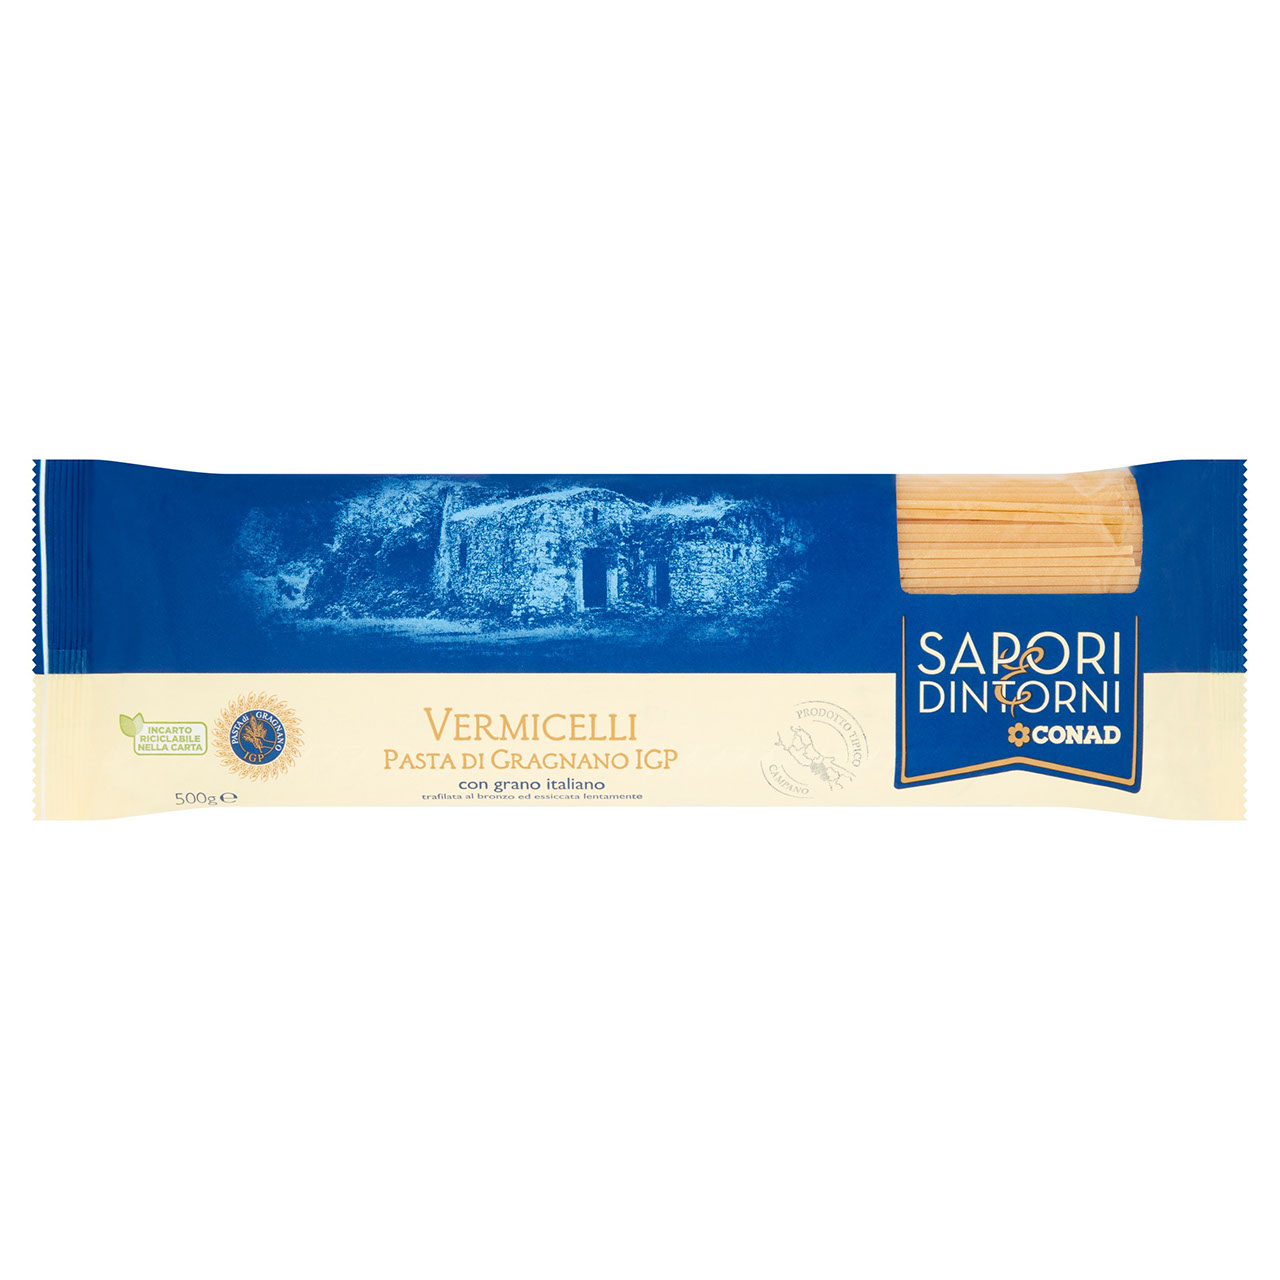 SAPORI & DINTORNI CONAD Vermicelli Pasta di Gragnano IGP 500 g